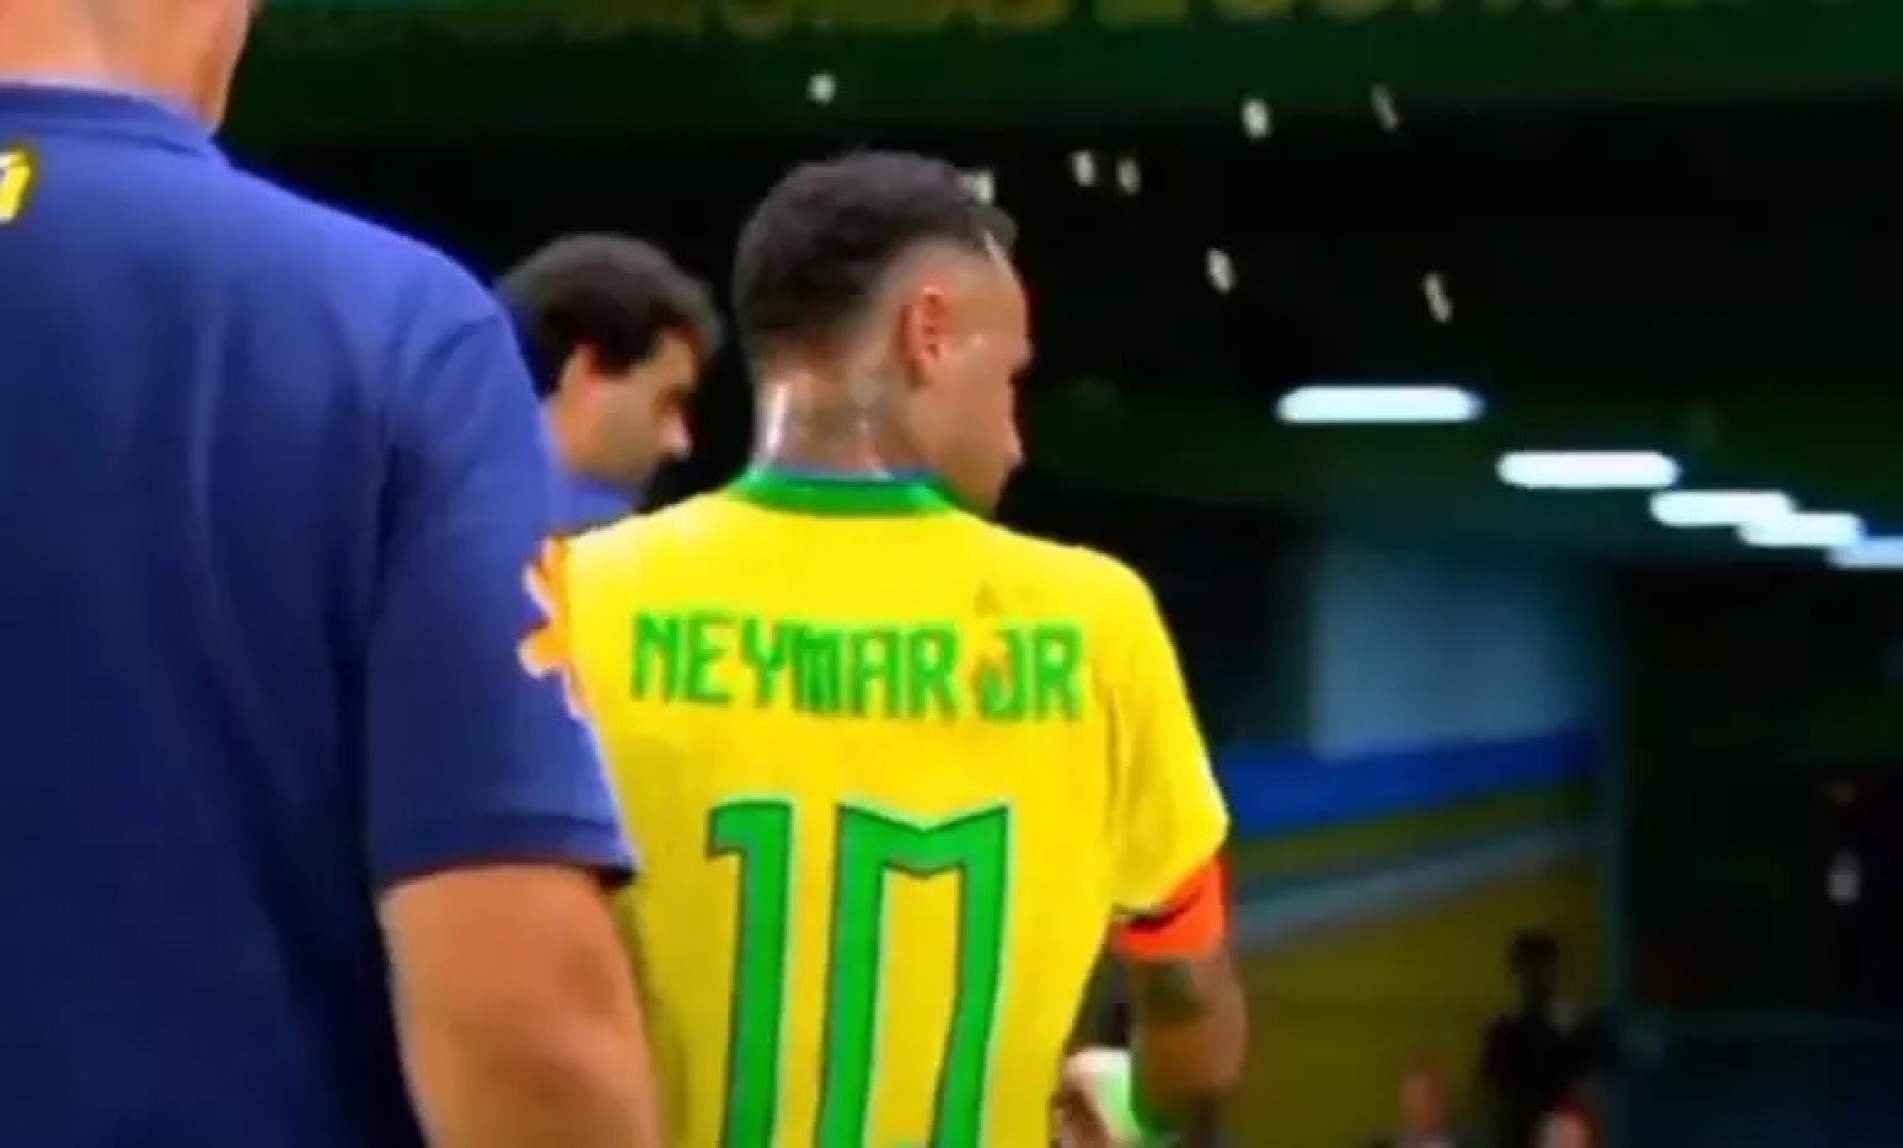 Brasil insiste na Neymar/dependência e só empata com Venezuela